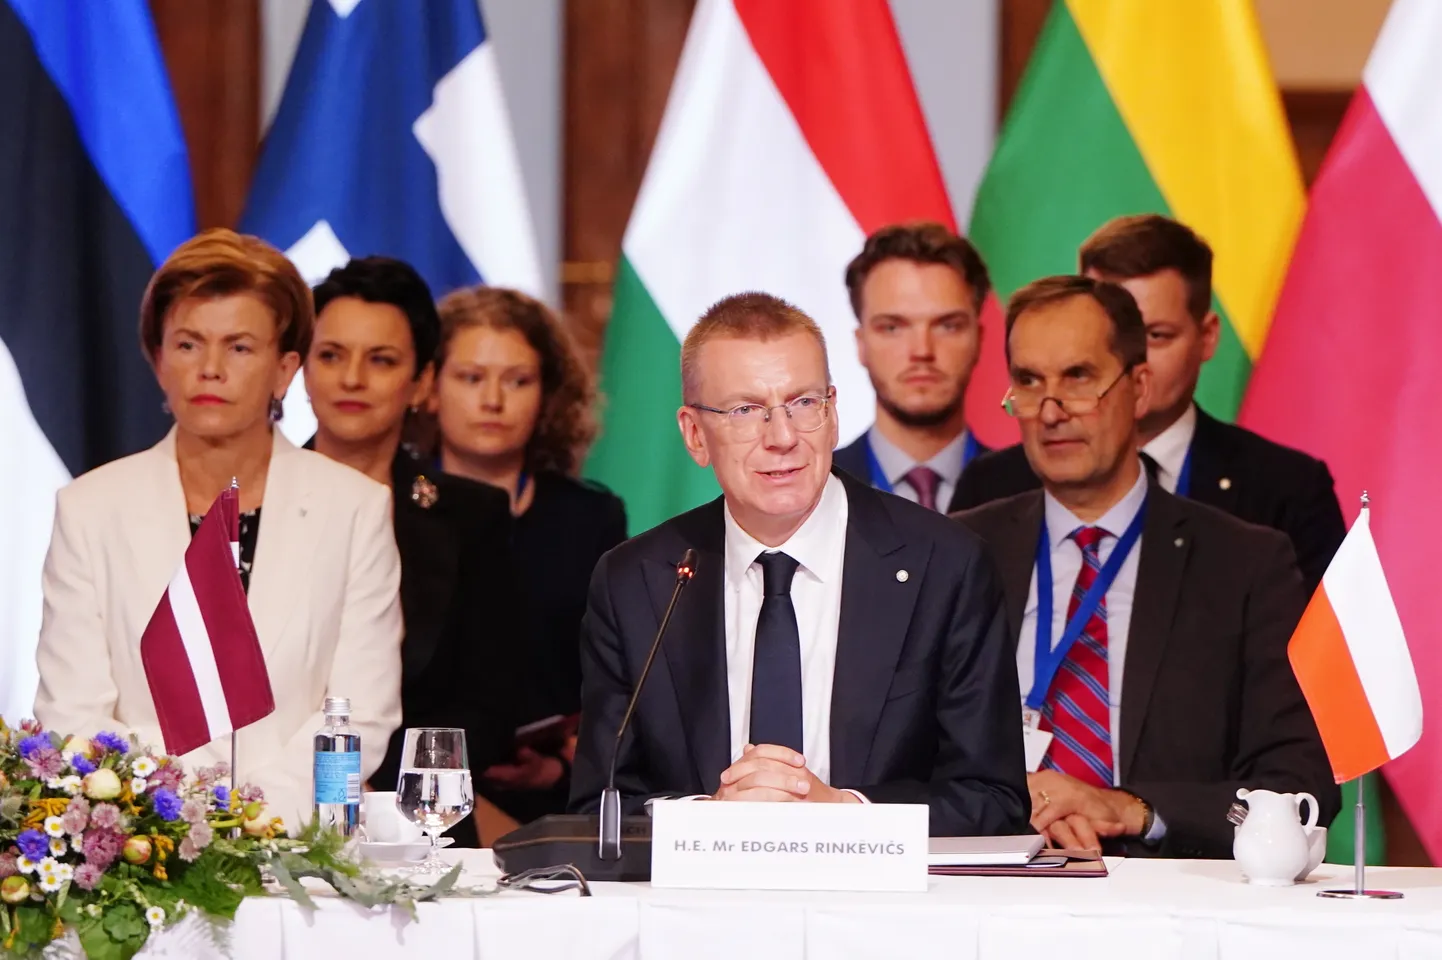 Ārlietu ministre Baiba Braže un Latvijas prezidents Edgars Rinkēvičs piedalās NATO Austrumu flanga valstu samita atklāšanas pasākumā Rīgas pilī.